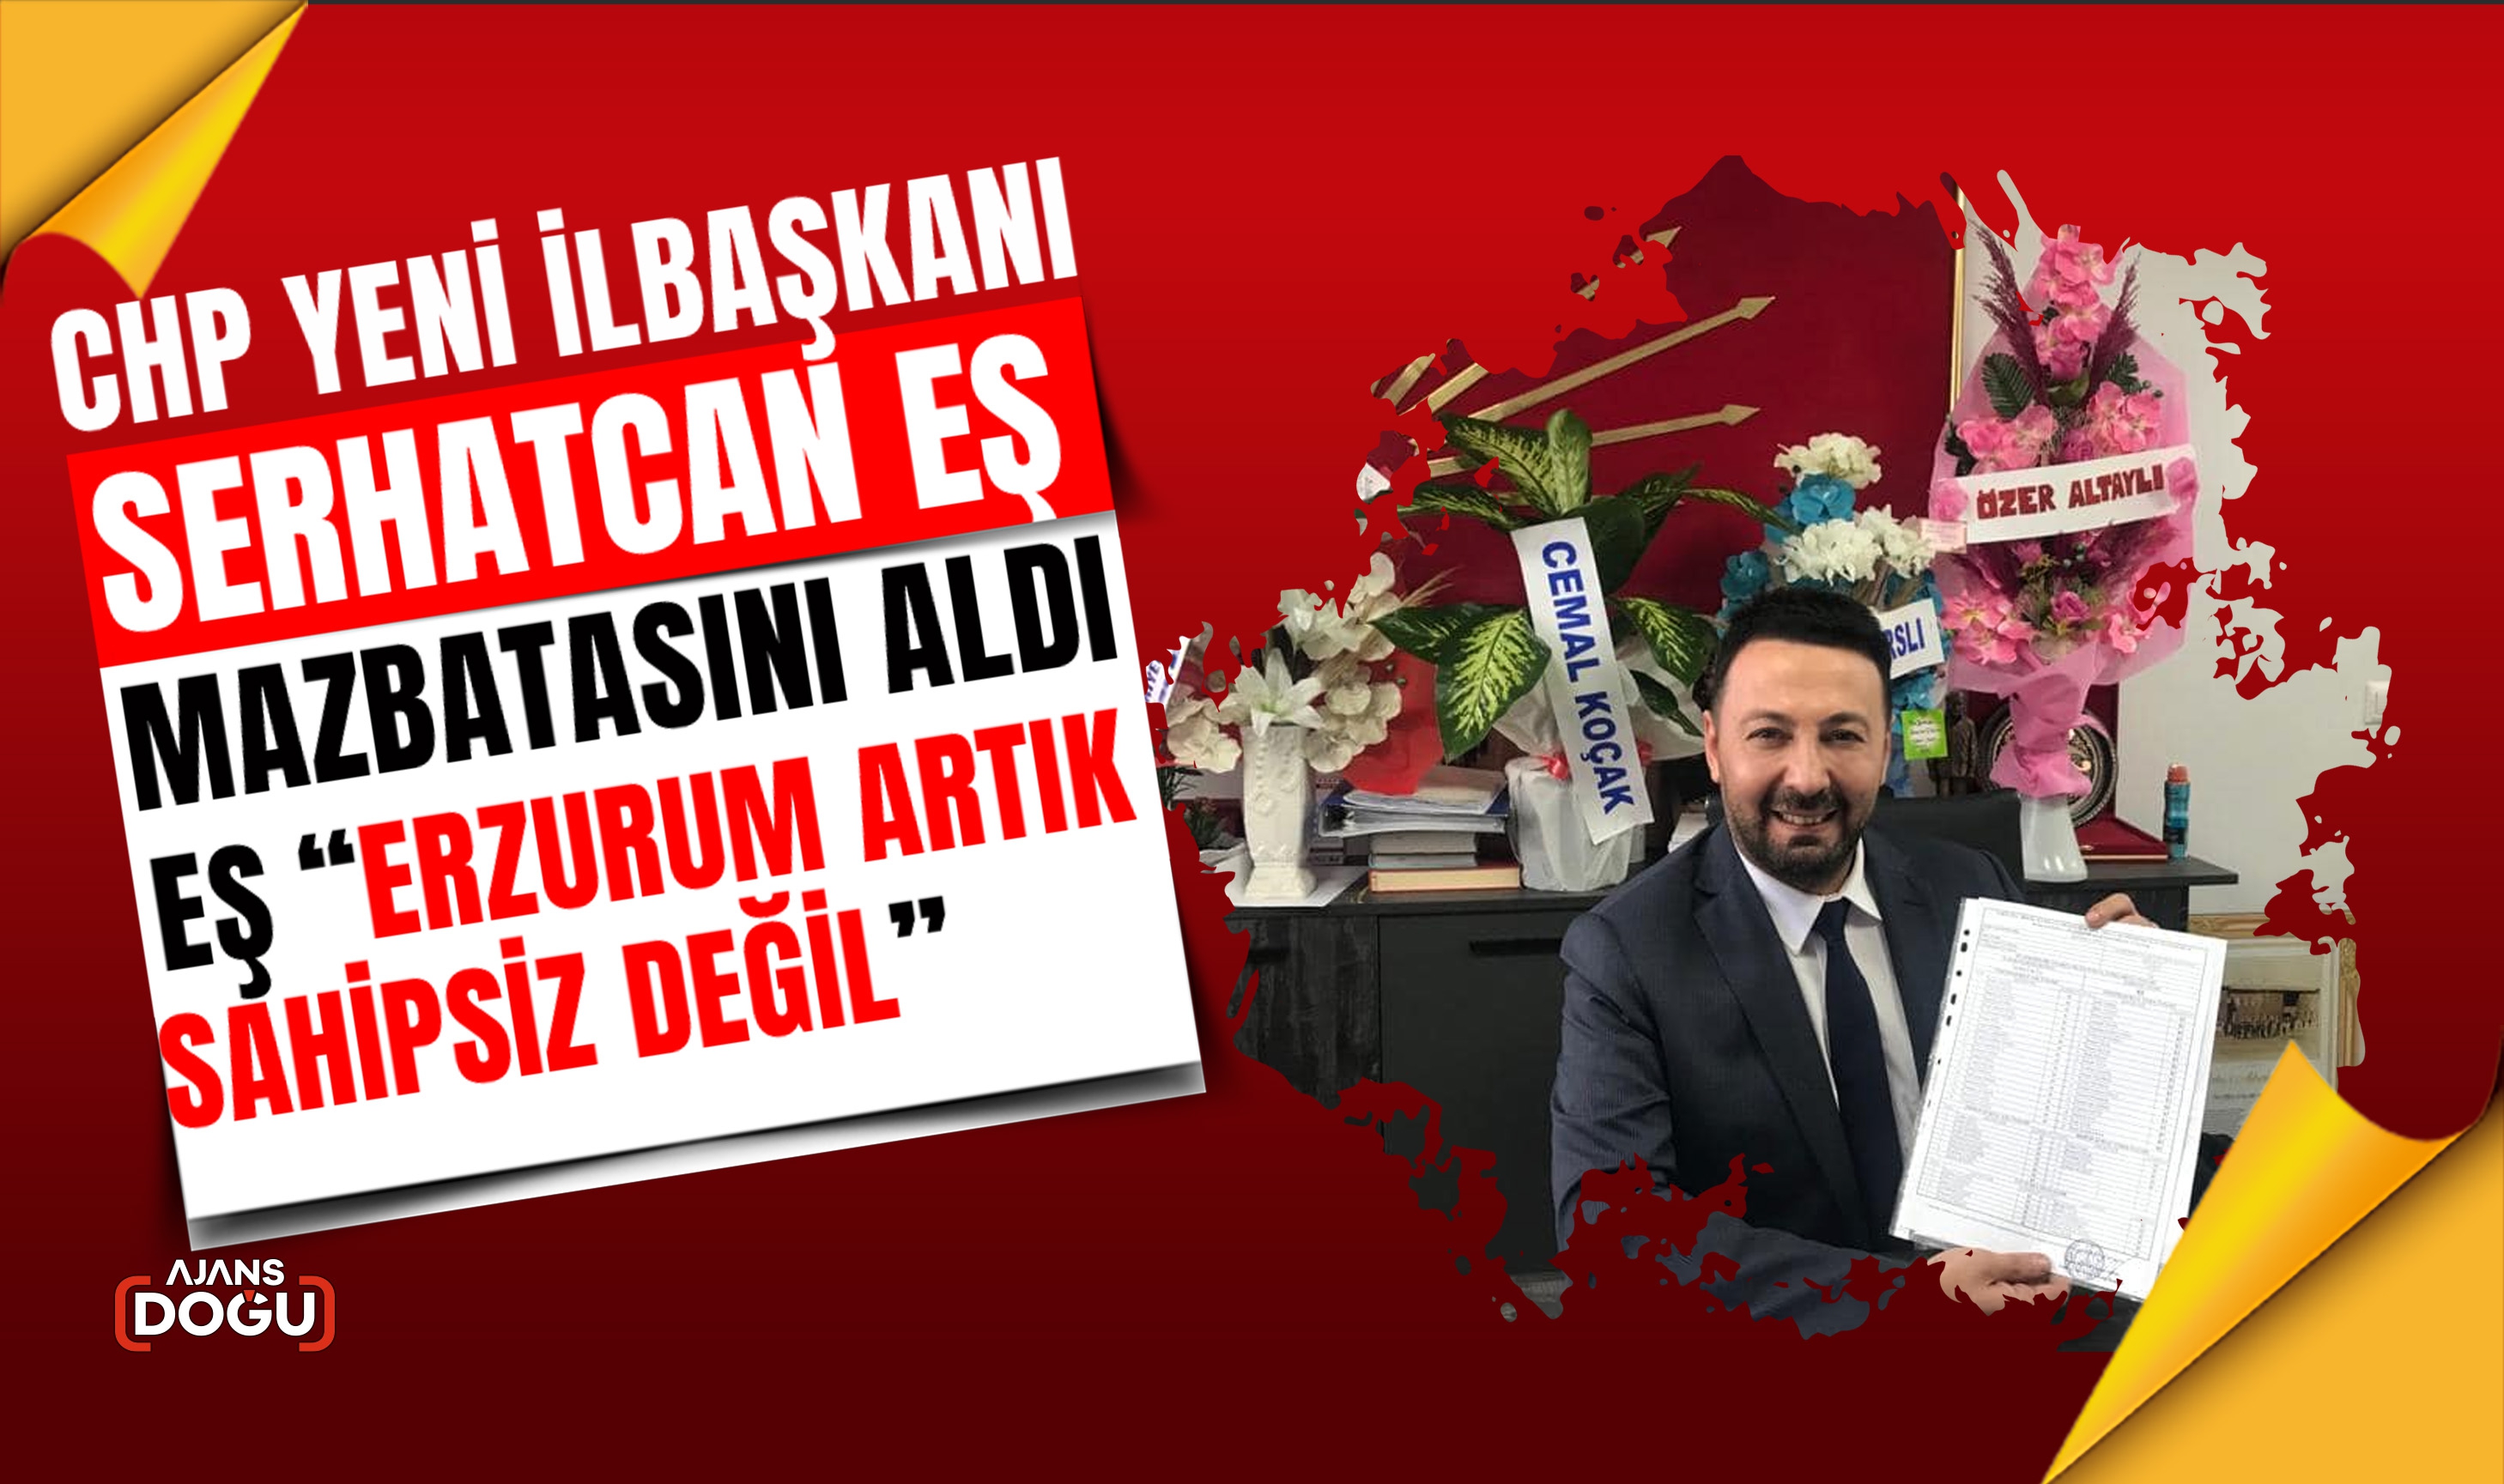 Erzurum İl Başkanı seçilen Serhatcan Eş mazbatasını aldı.  